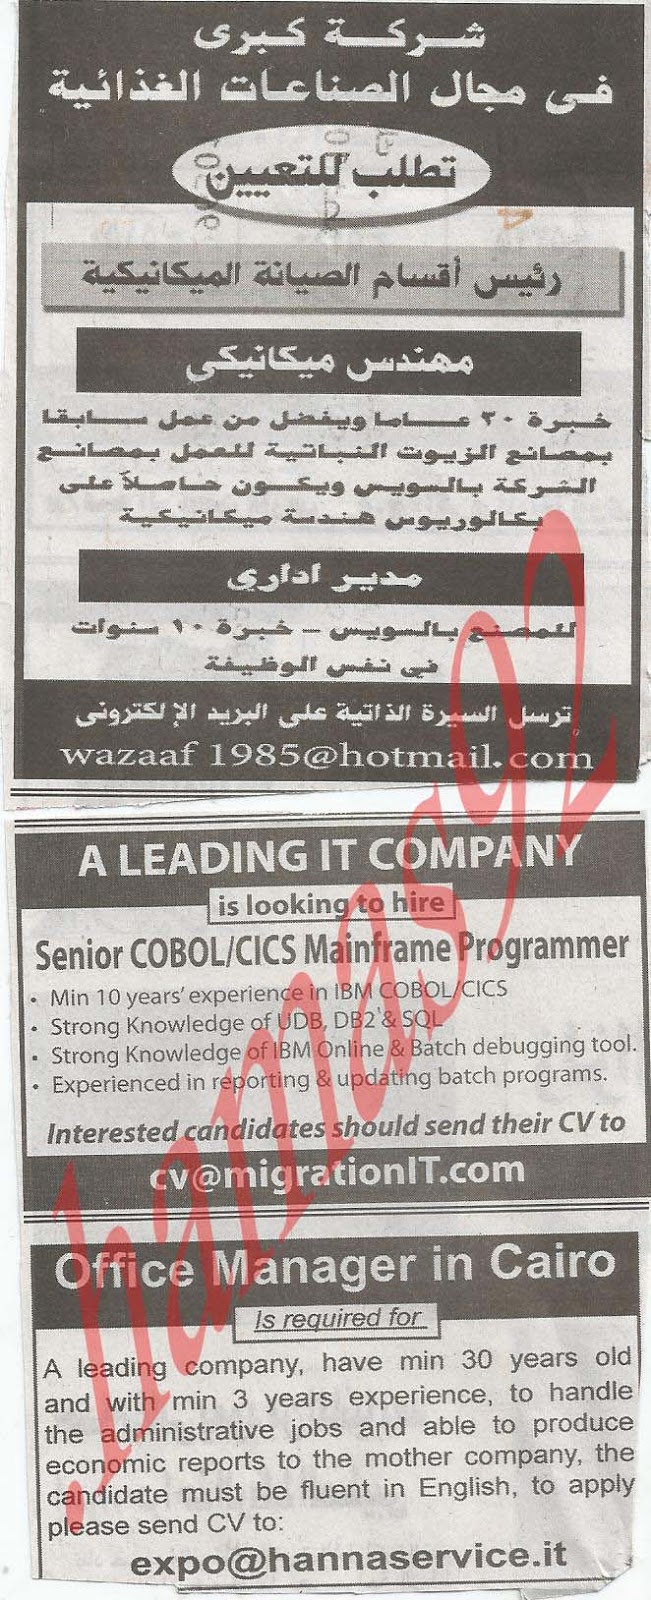  اعلانات الوظائف الخالية فى جريدة الاهرام الاسبوعى الجمعة 18 يناير 2013